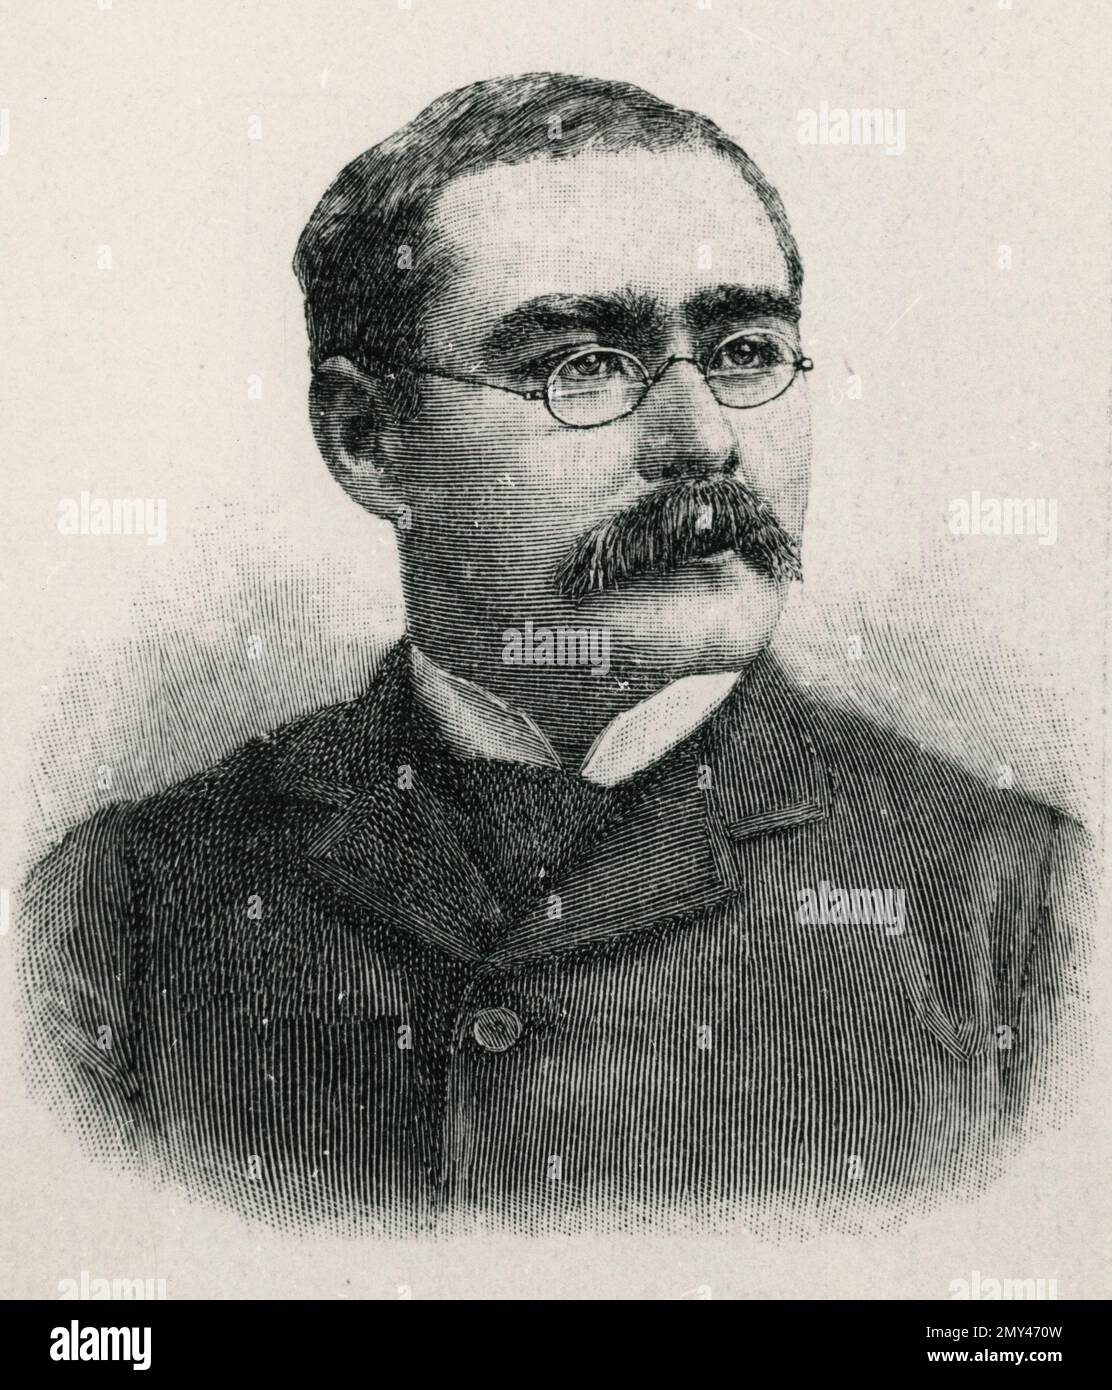 Ritratto di romanziere inglese, scrittore di storia breve, poeta e giornalista Rudyard Kipling, 1900s Foto Stock